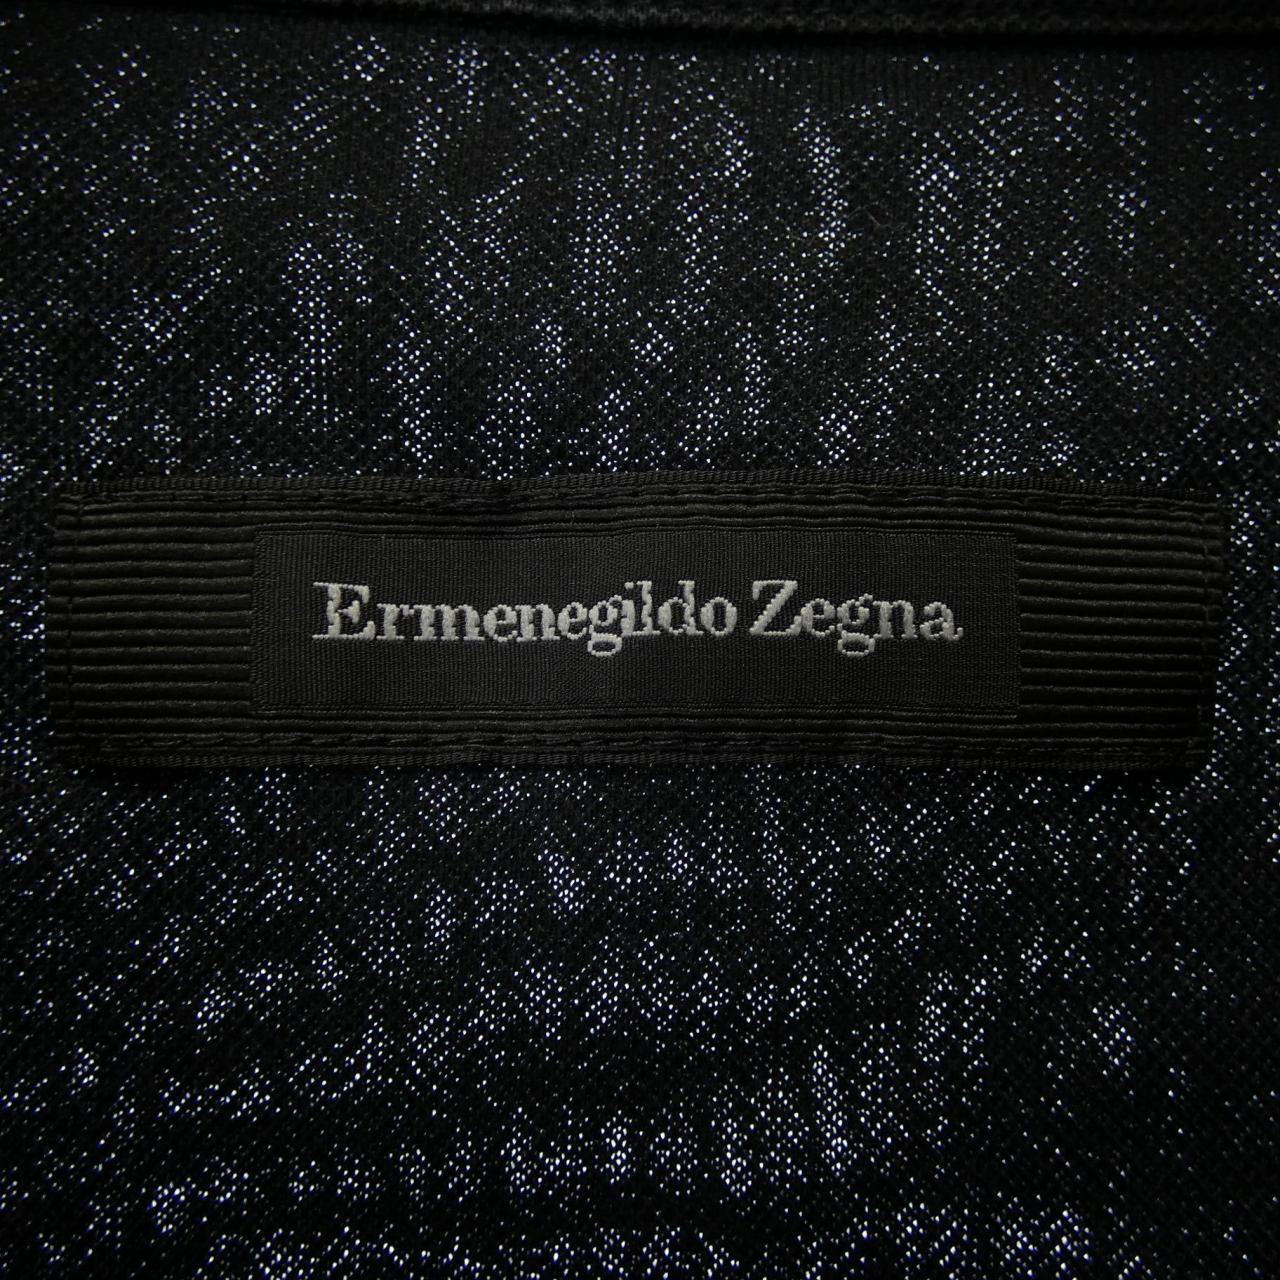 Ermenegildo Zegna Polo衫